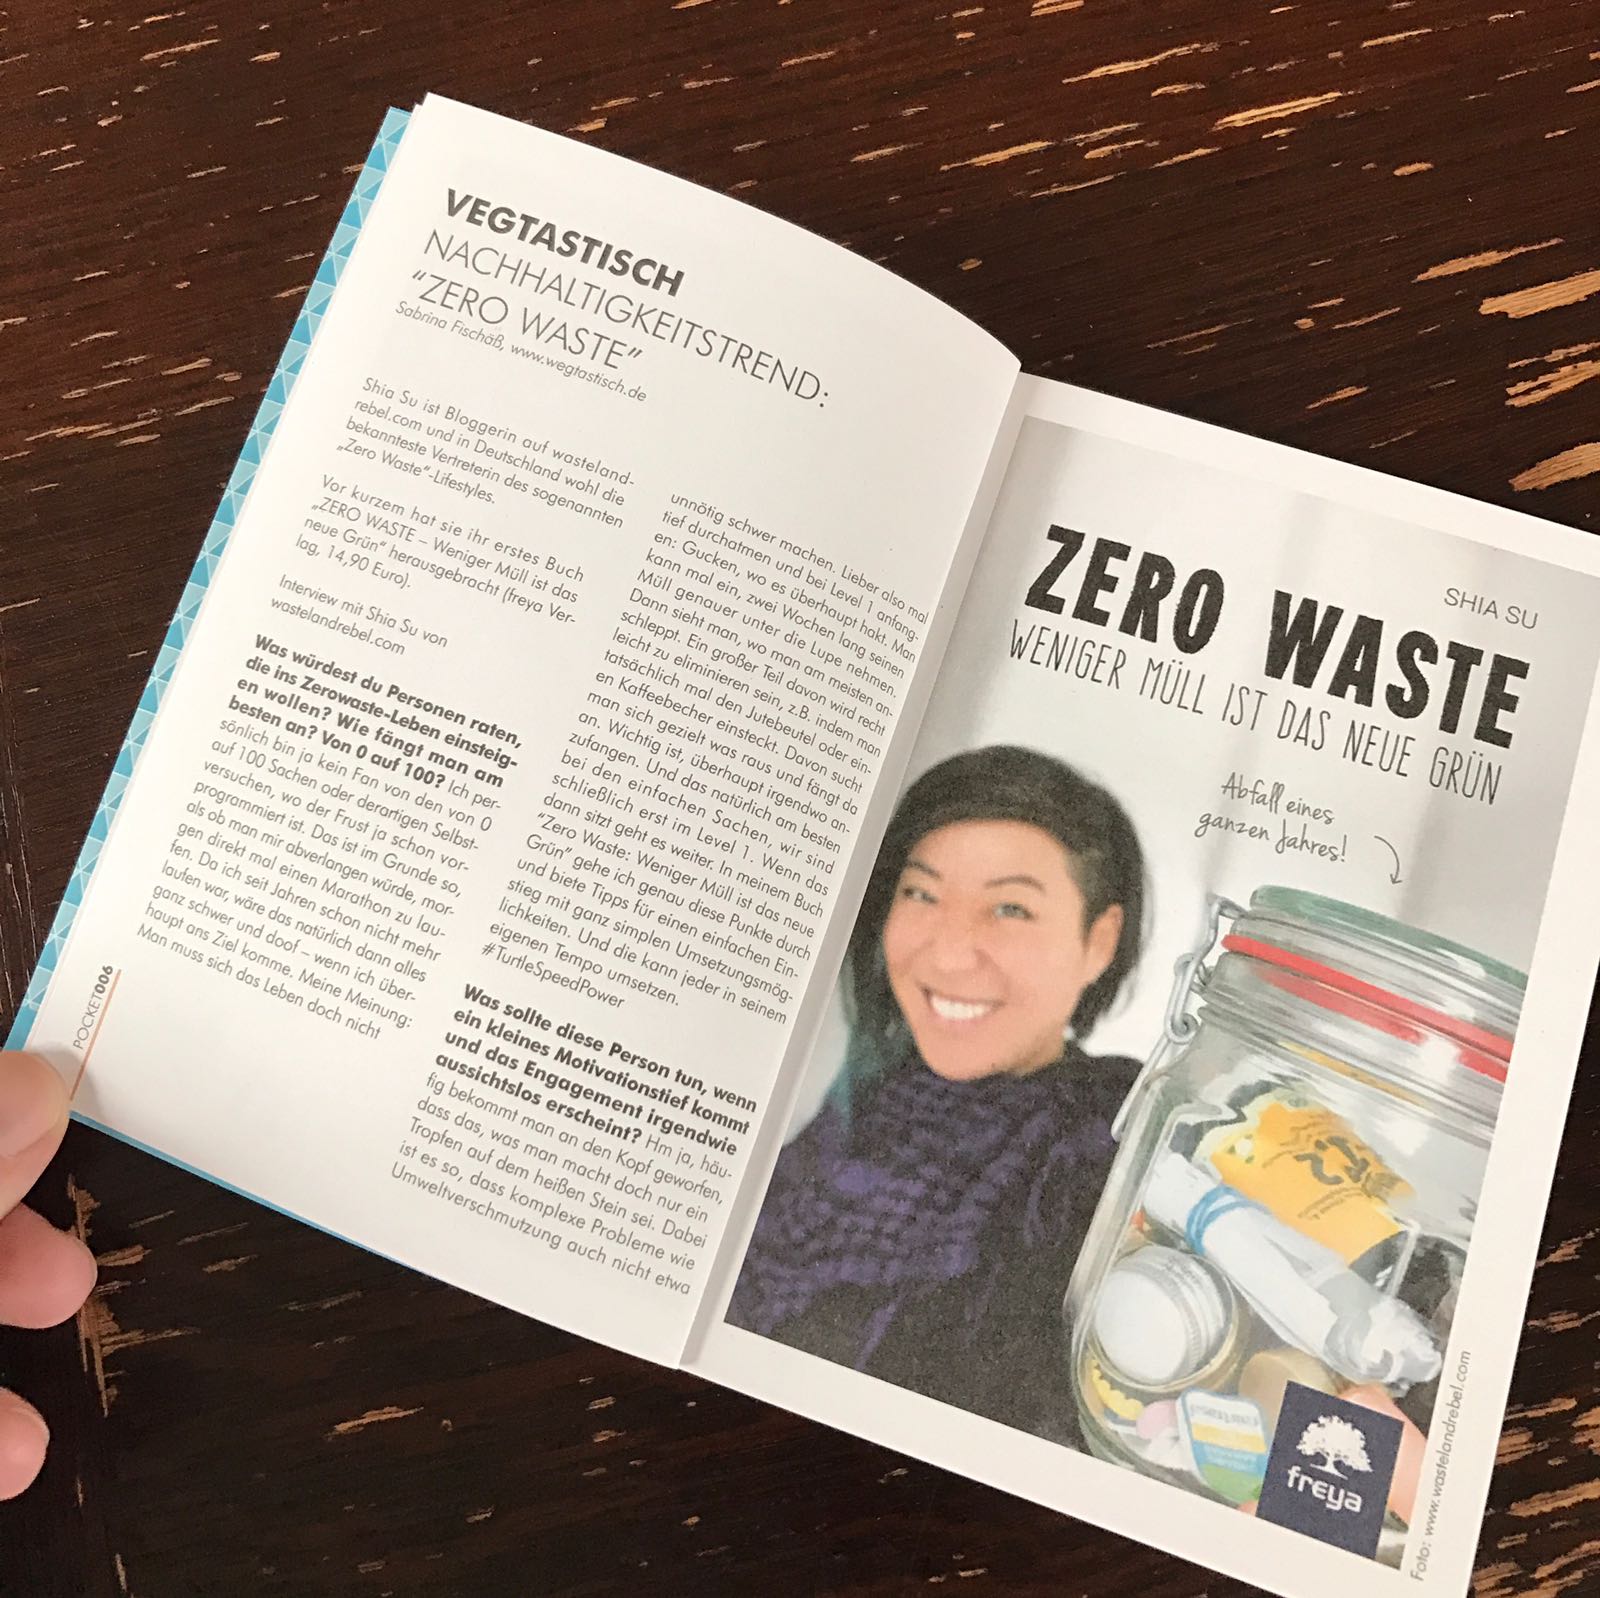 Kolumne im POCKET MAGAZIN: Nachhaltigkeitstrend “Zero Waste” – Interview mit Bloggerin und Autorin Shia Su von wastelandrebel.com